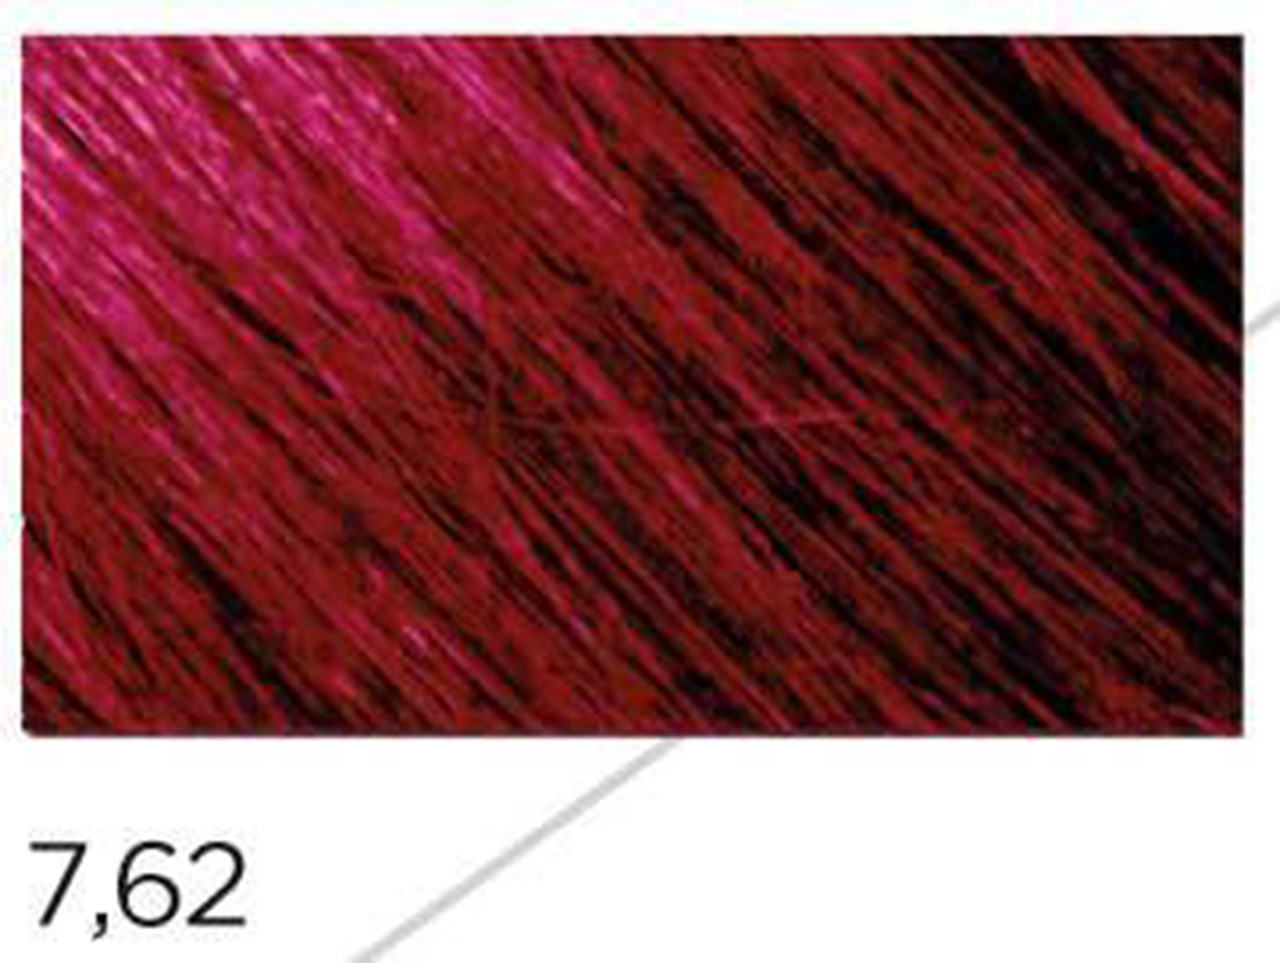 62 MEGIX10 - 7.62 MEDIUM RED IRIS BLONDE 3.5oz